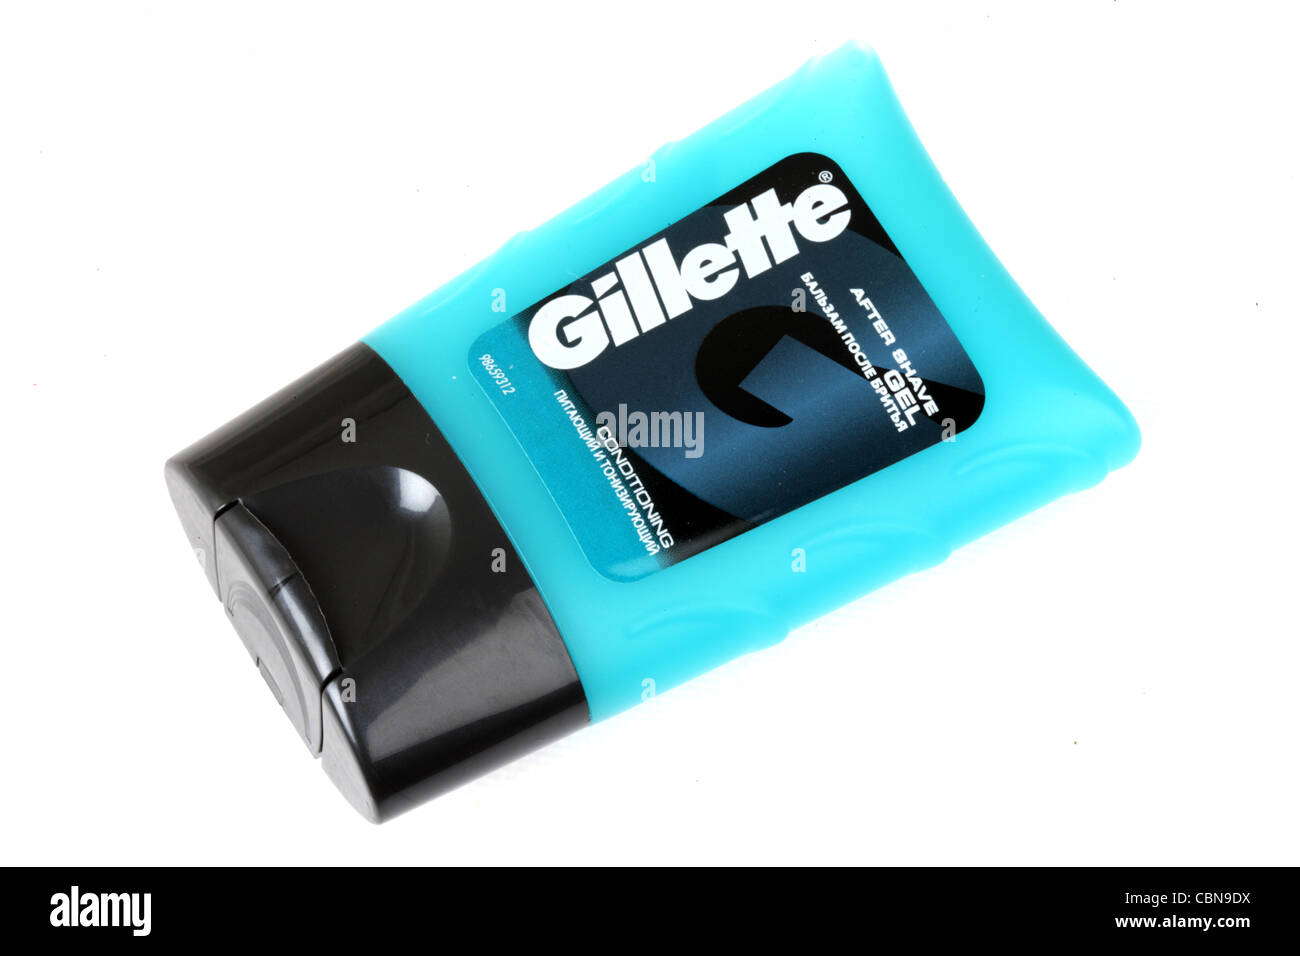 Gillette After Shave Gel Stock Photo